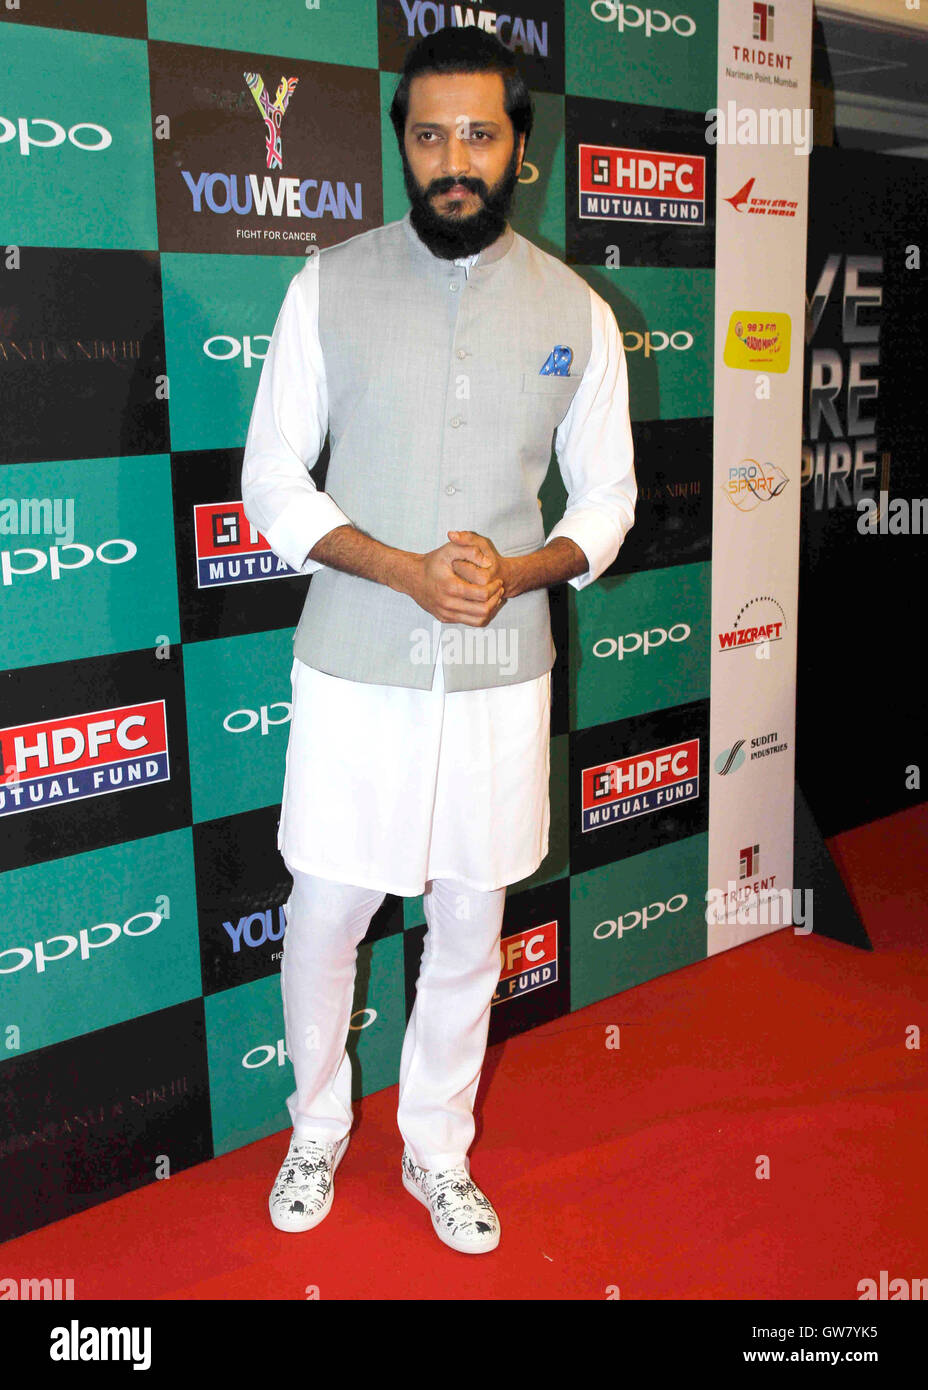 Attore di Bollywood Riteish Deshmukh lancio indiano giocatore di cricket Yuvraj Singh brand di abbigliamento YWC progettato Shantanu Nikhil Mumbai Foto Stock